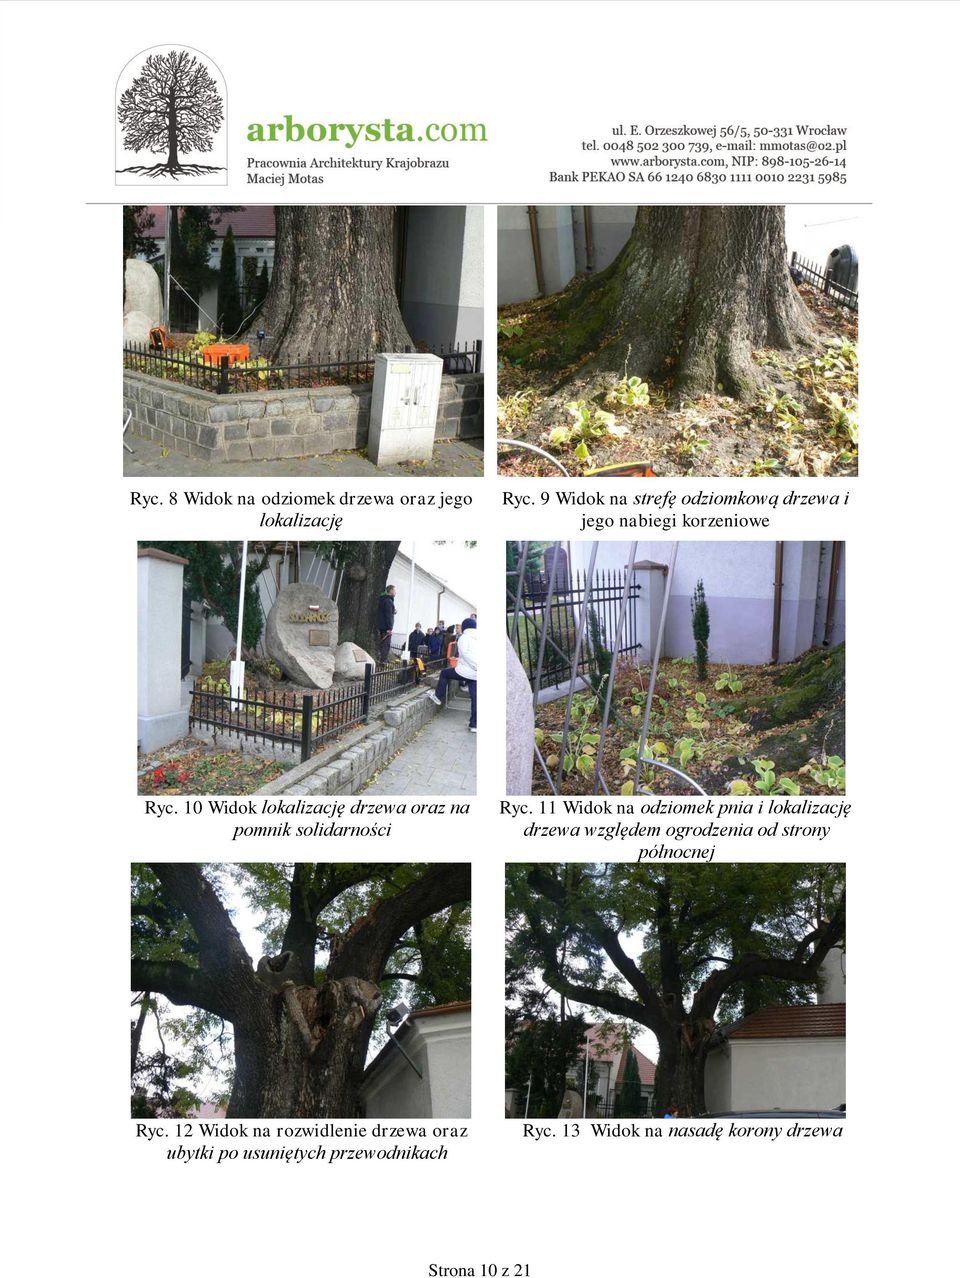 10 Widok lokalizację drzewa oraz na pomnik solidarności Ryc.